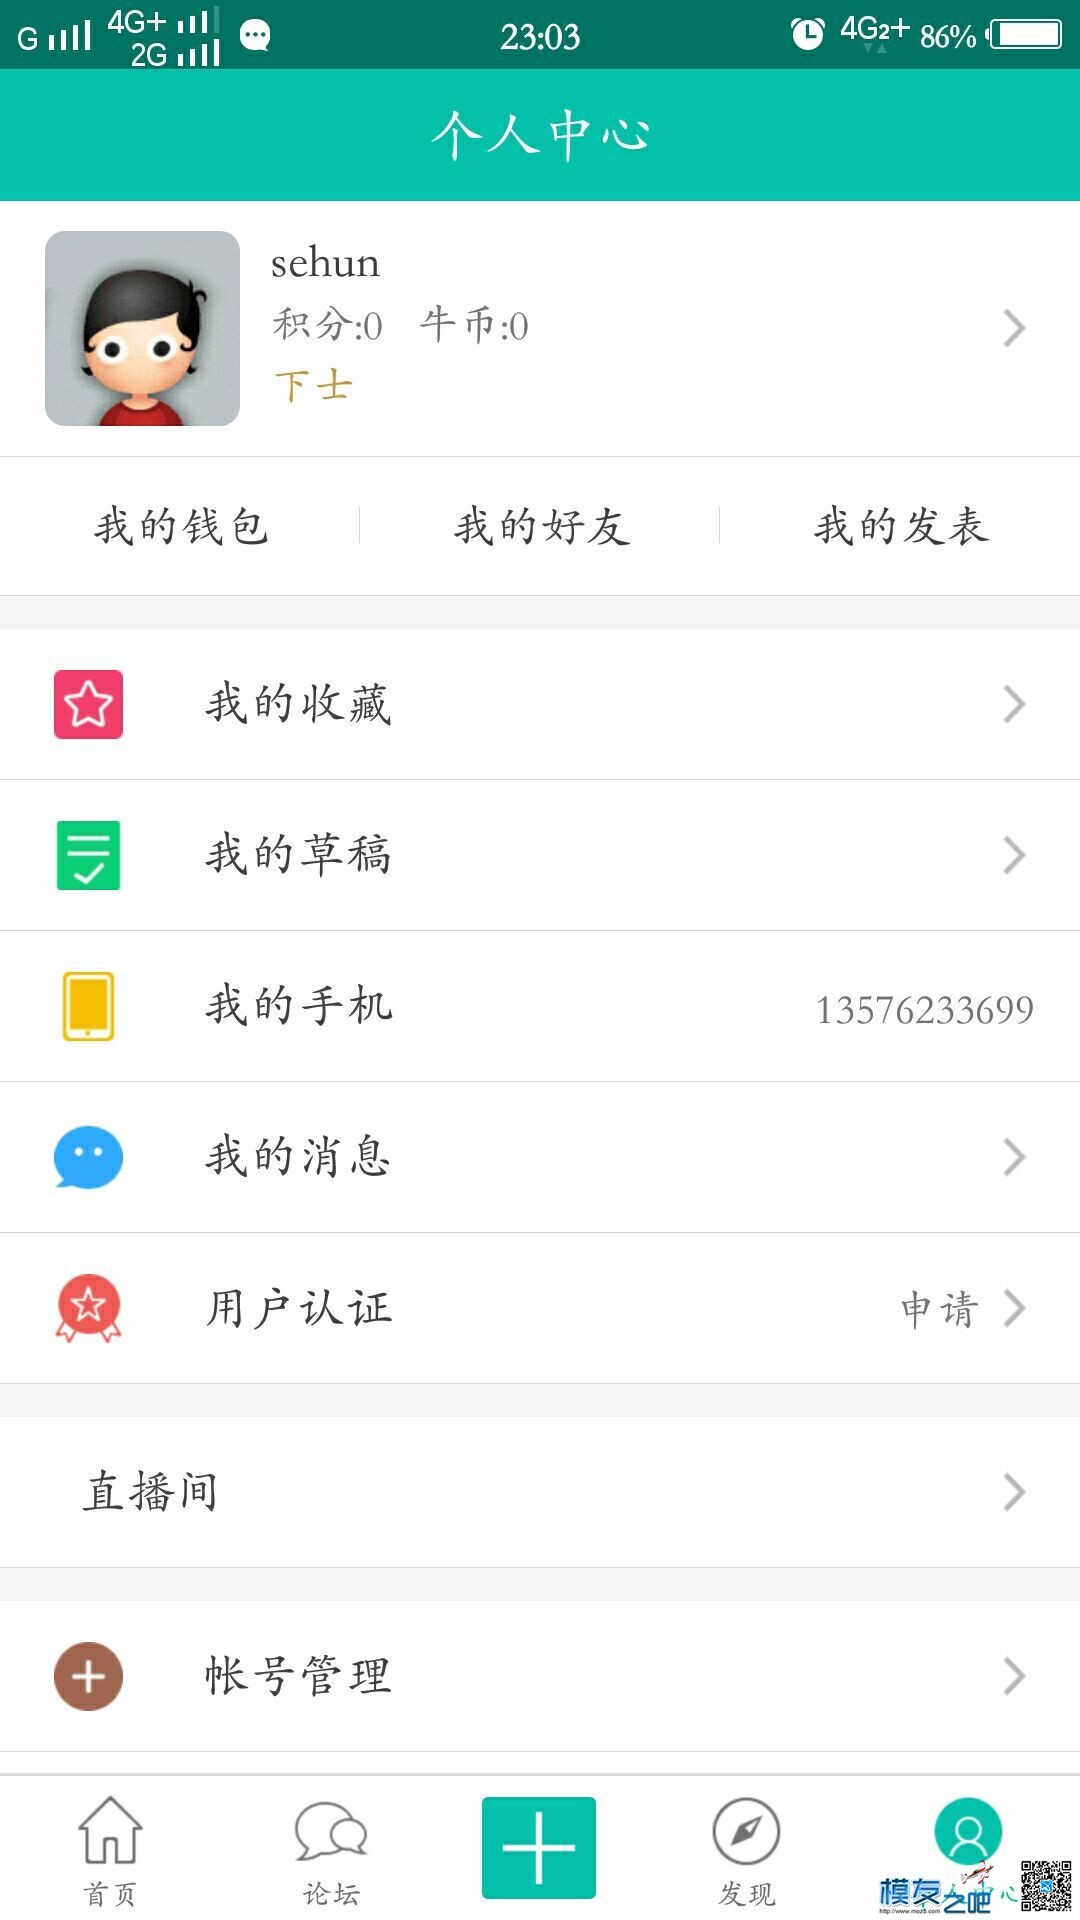 【模友之吧】100个aomway5.8G-500mw图传用于论坛推广！  作者:zhangyiyun2014 8754 